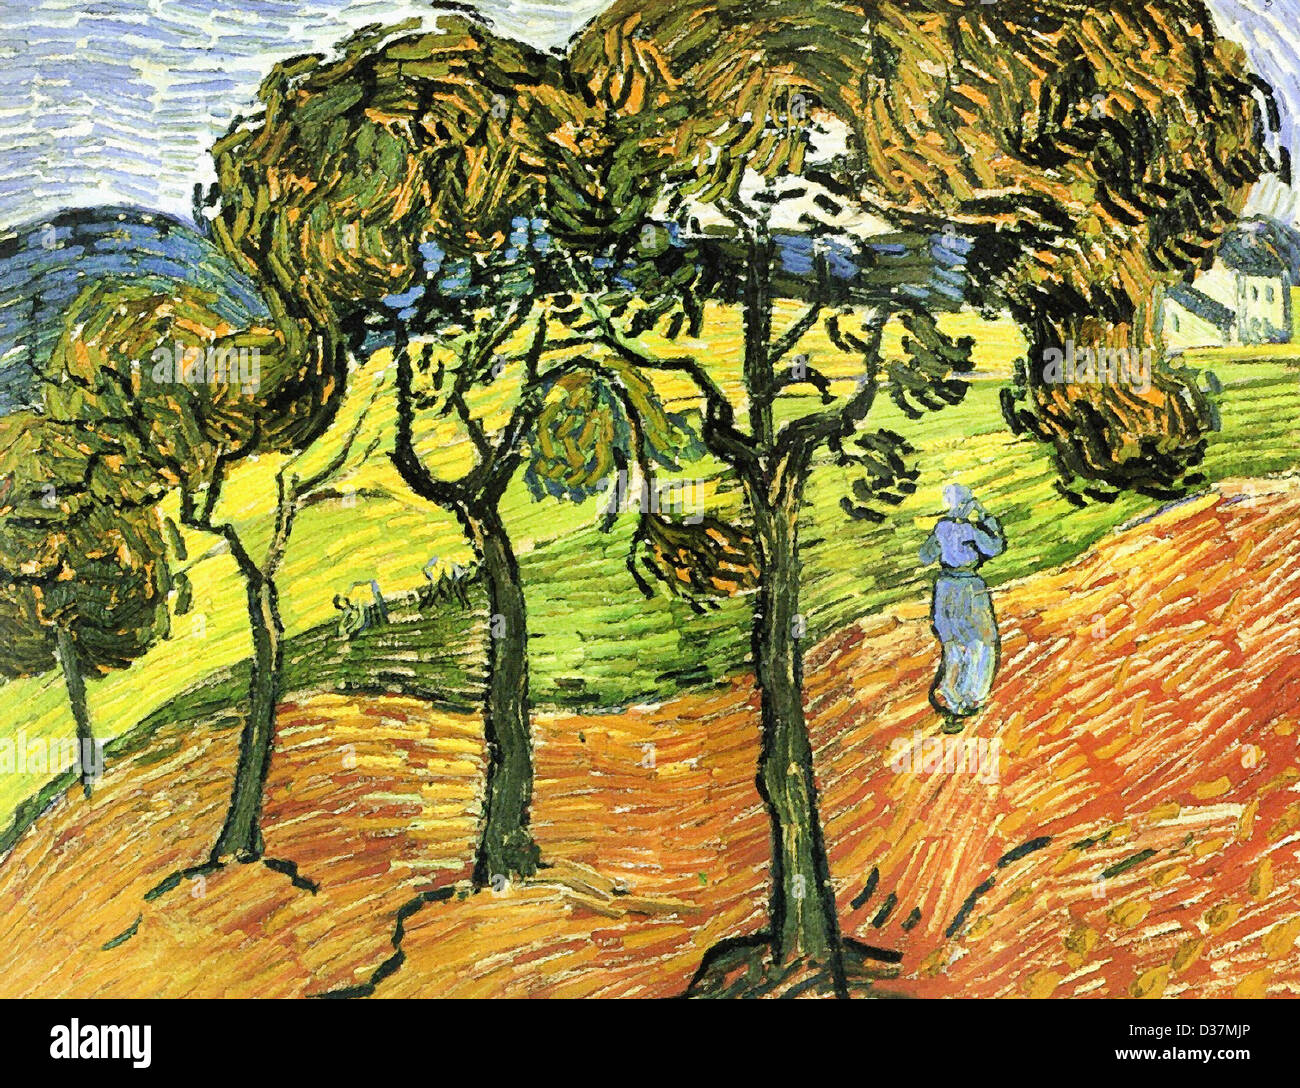 Vincent van Gogh, Paysage avec des arbres et des chiffres. 1889. Le postimpressionnisme. Huile sur toile. Baltimore Museum of Art, Baltimore Banque D'Images